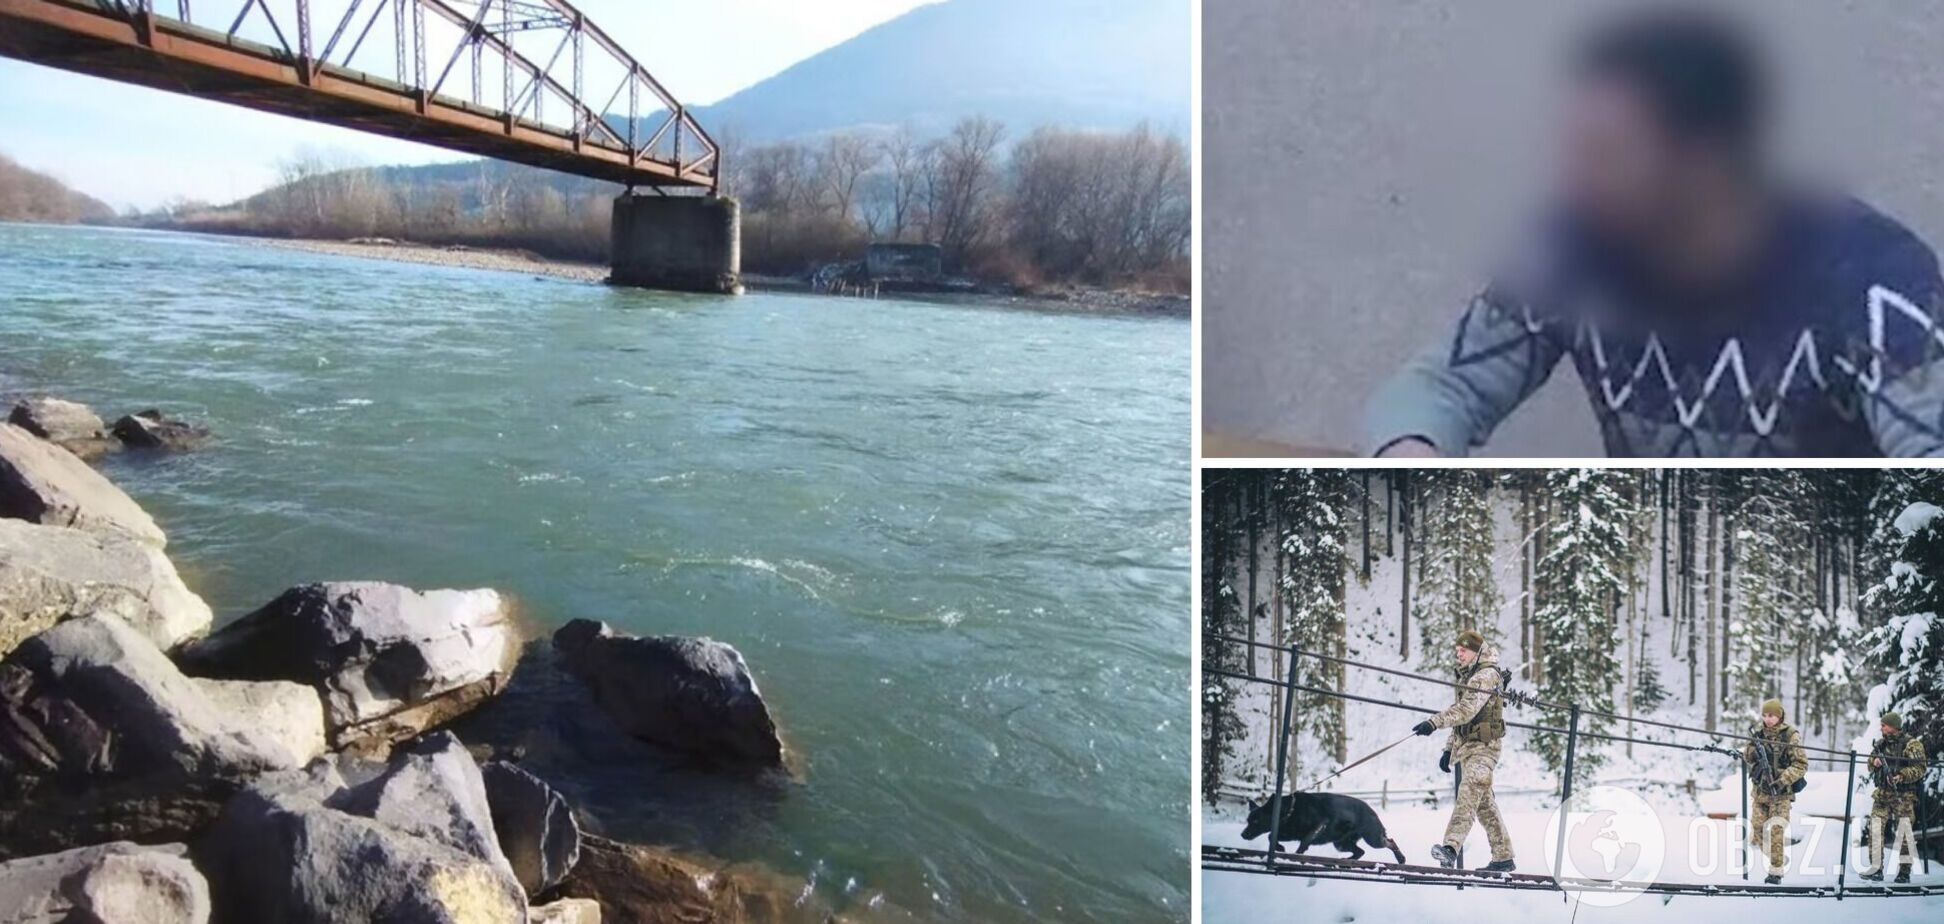 'Помолился и уехал в сторону границы': украинец рассказал, как пытался переплыть Тису посреди зимы, чтобы попасть в Венгрию. Видео